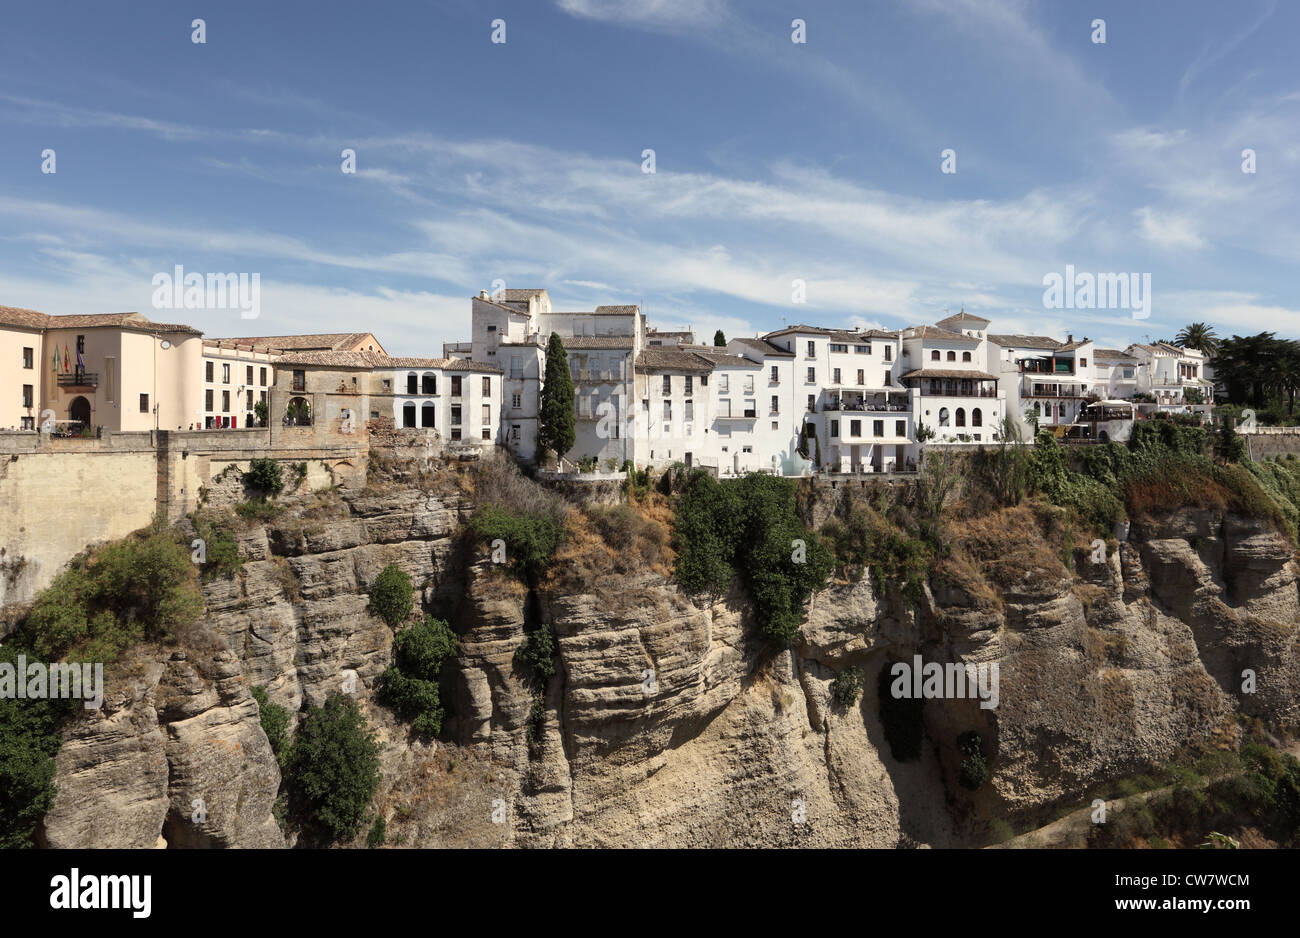 Vieille ville de Ronda sur une roche, Andalousie Espagne Banque D'Images